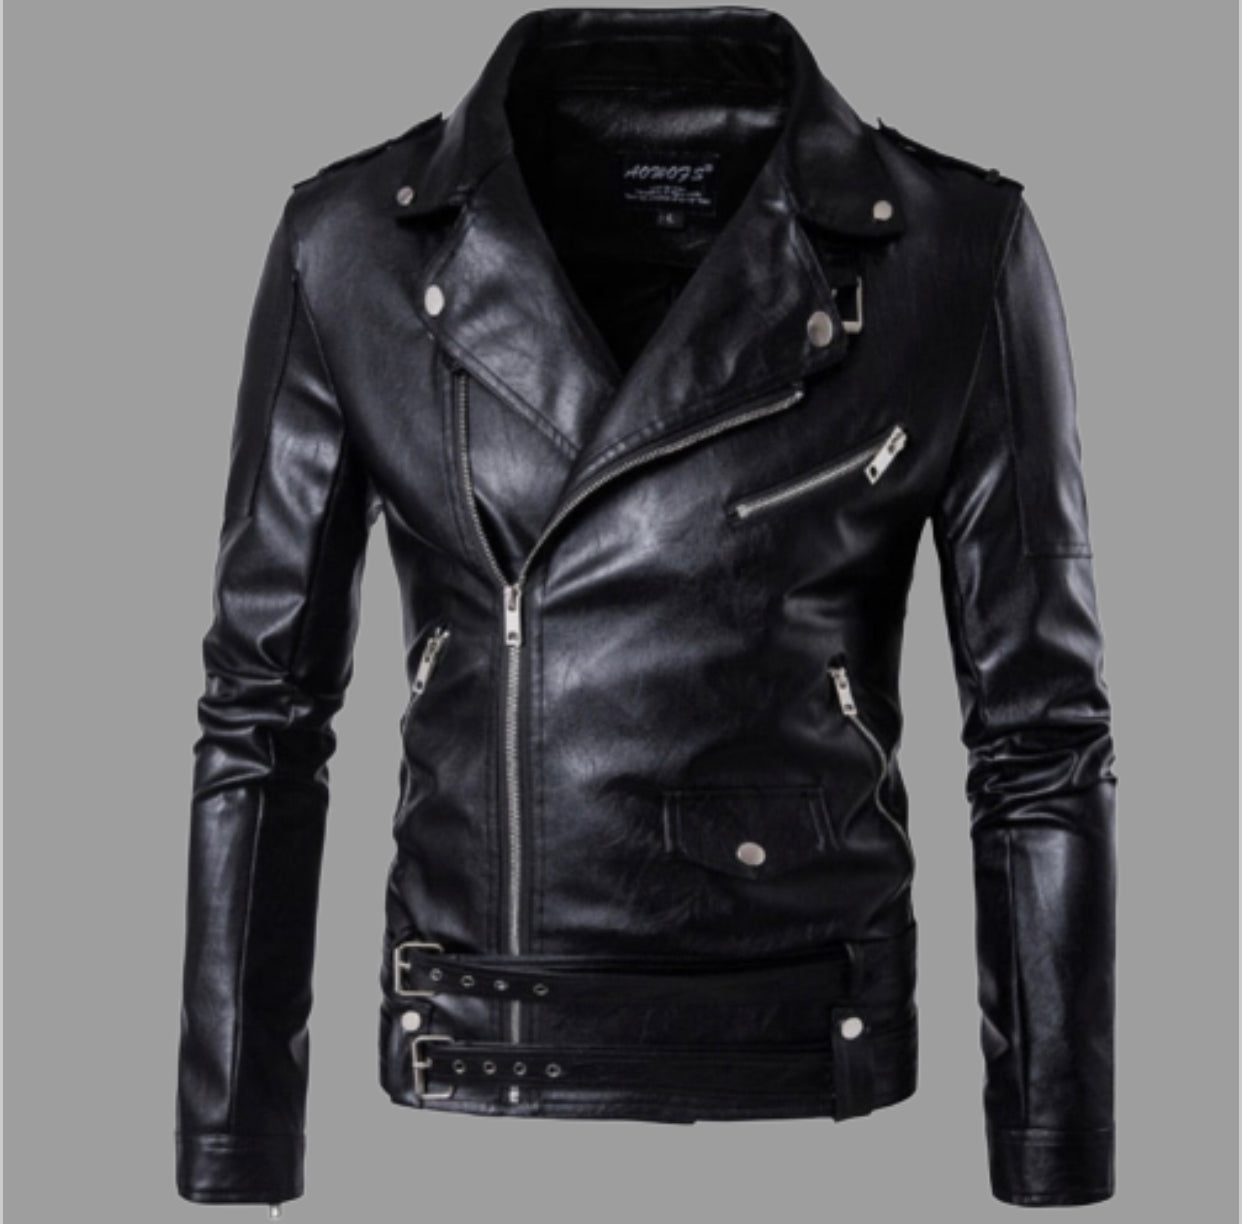 Manio Motorcycle Pilot Leather Jacket